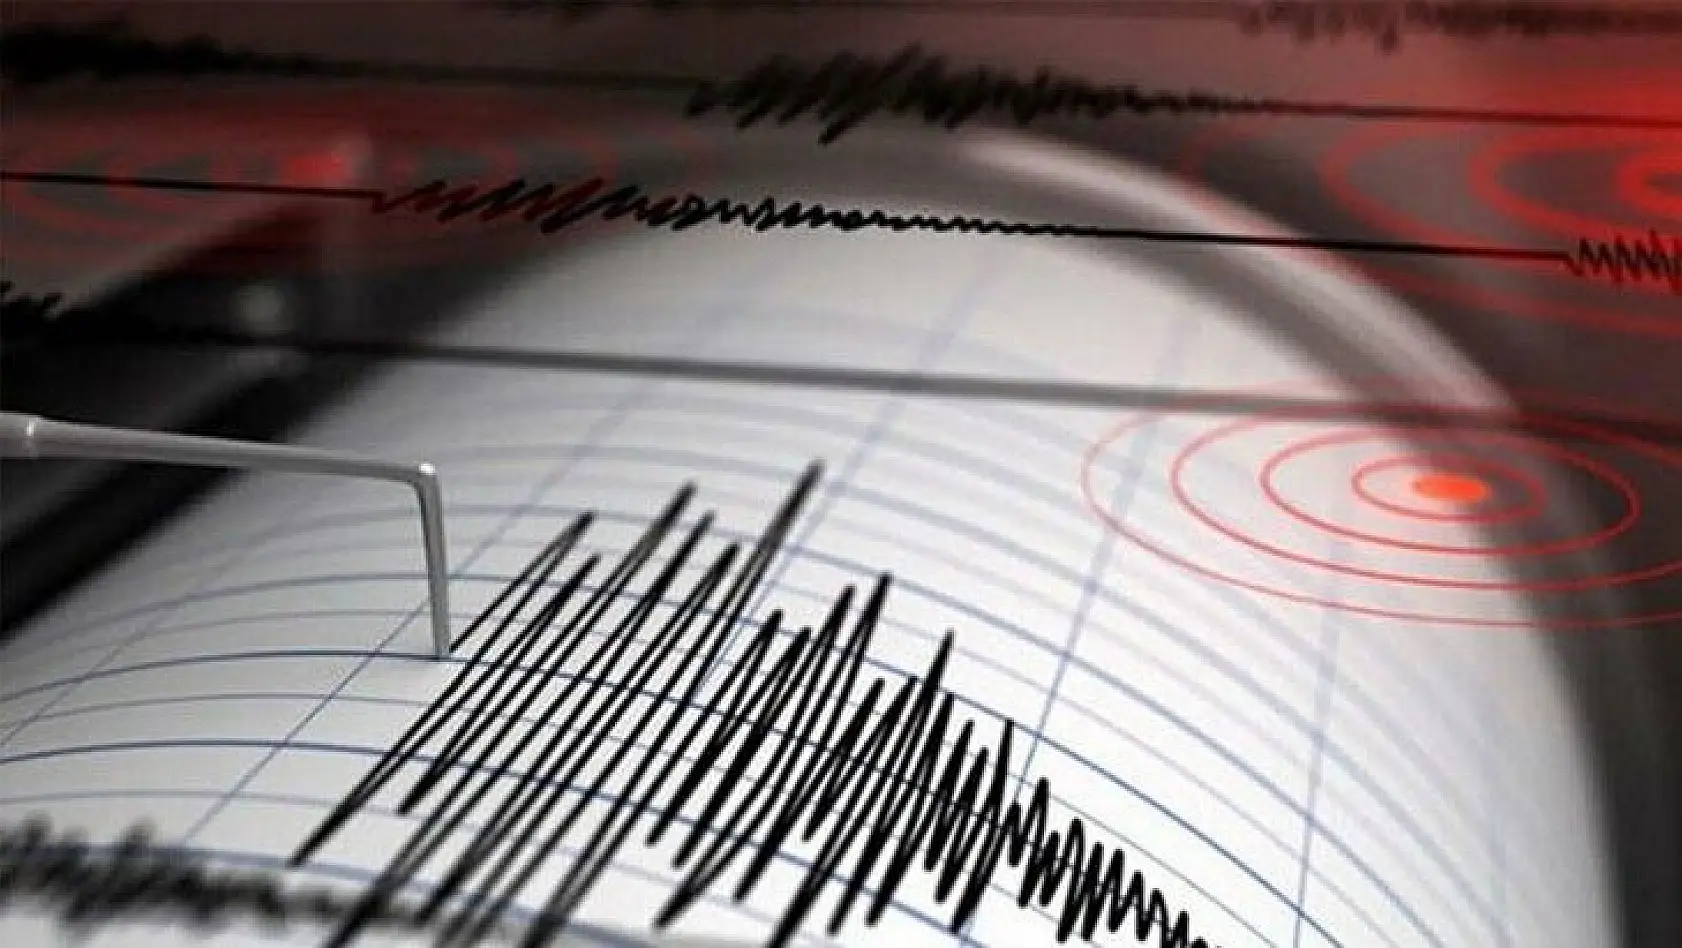 Elazığ'da 3.0 şiddetinde bir deprem meydana geldi